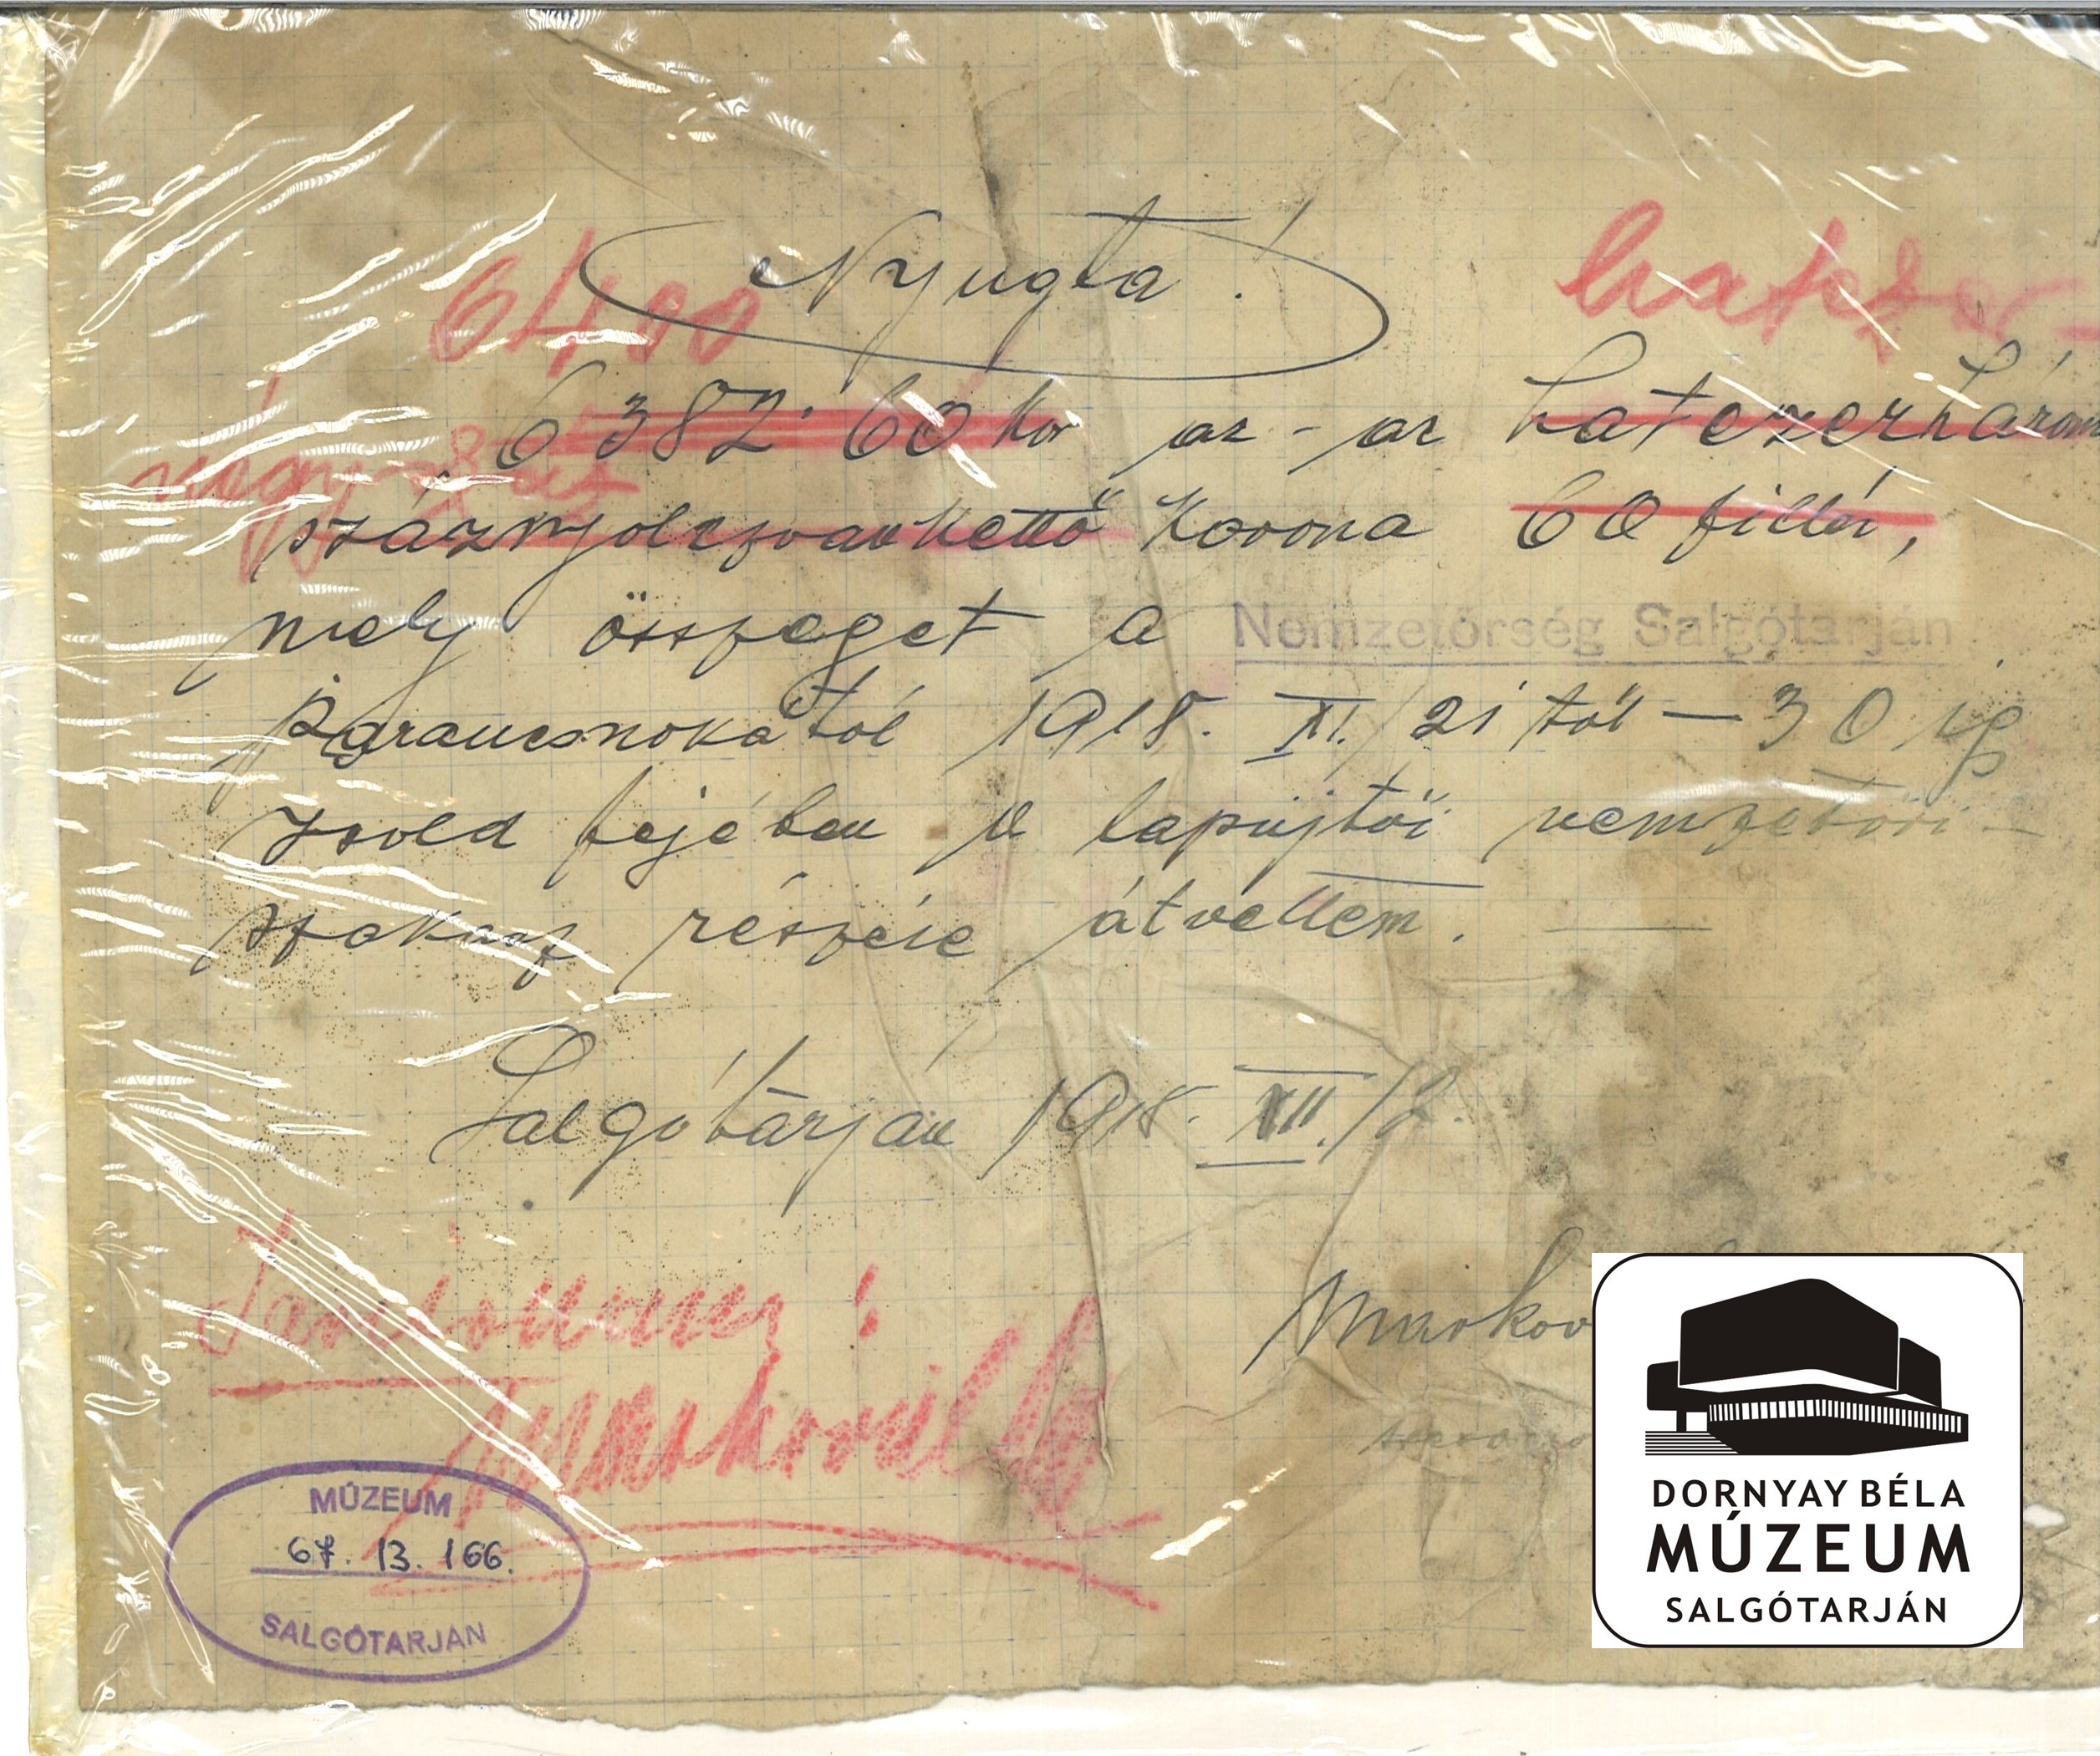 Nyugta a karancslapujtői nemzetőri szakasz 1918.nov. 21-30-ig járó zsoldjáról (Dornyay Béla Múzeum, Salgótarján CC BY-NC-SA)